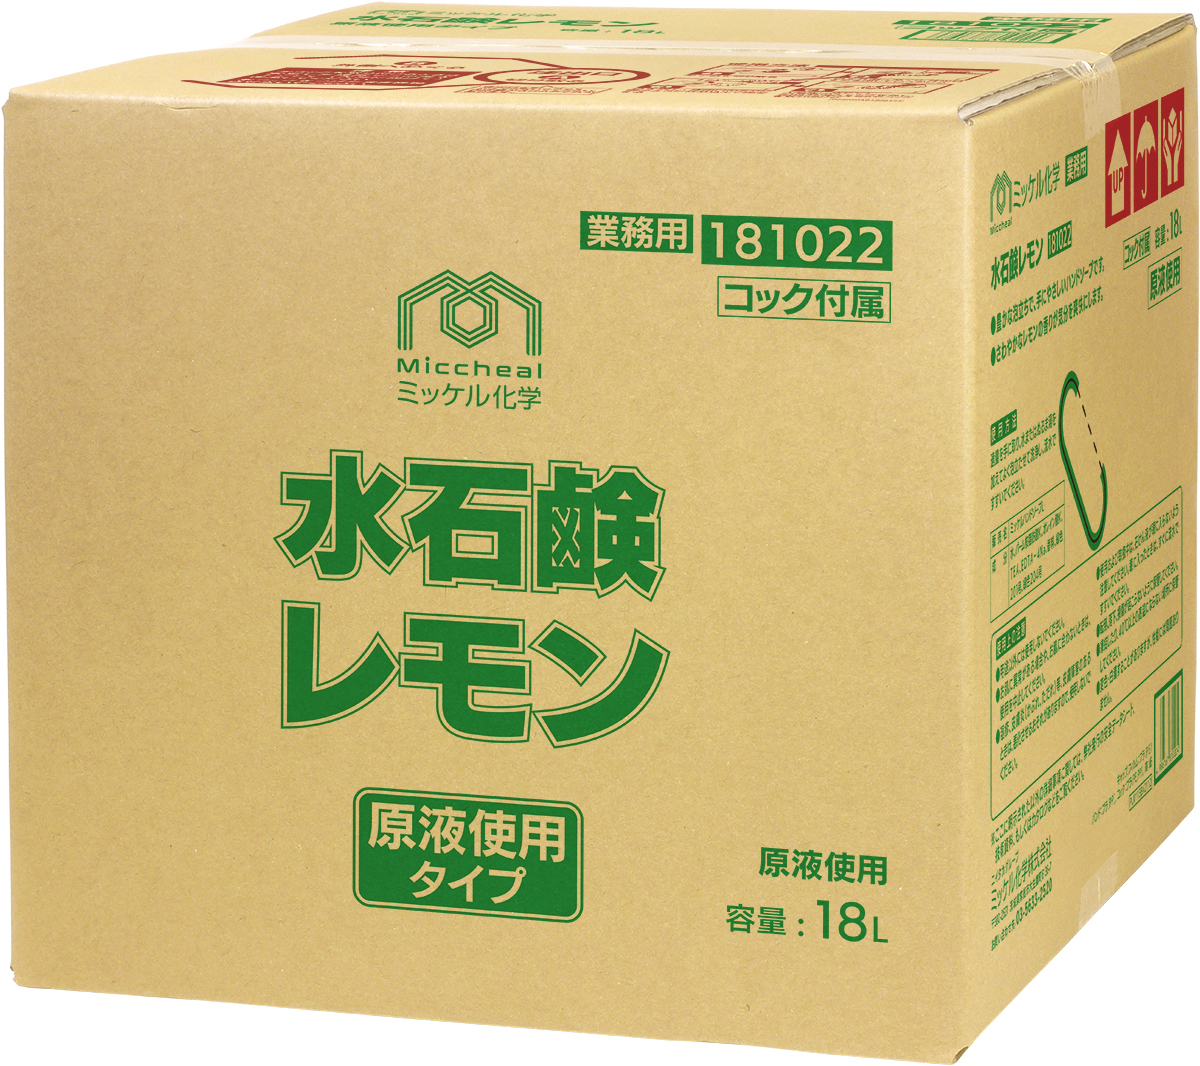 水石鹸レモン - ミッケル化学株式会社